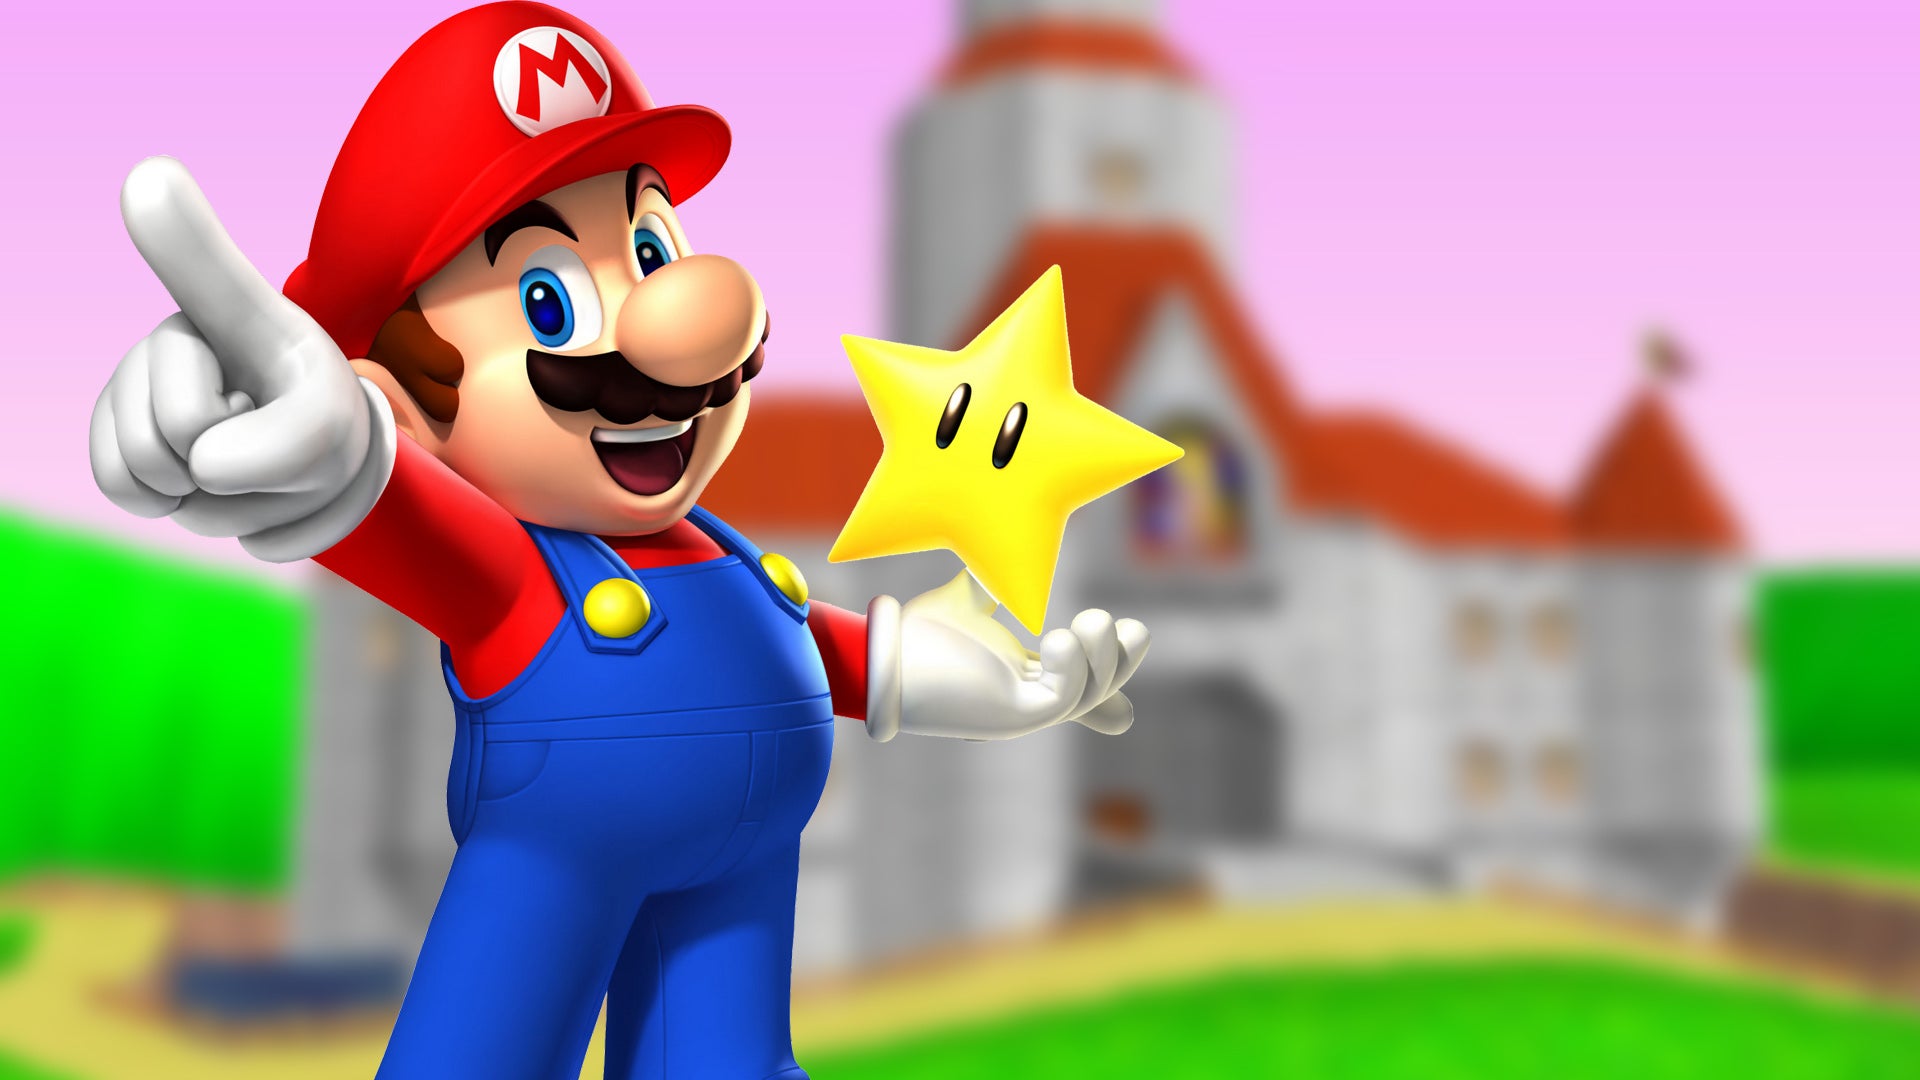 UNIQLO akan meluncurkan pada bulan April lini pakaian baru yang terinspirasi oleh Super Mario